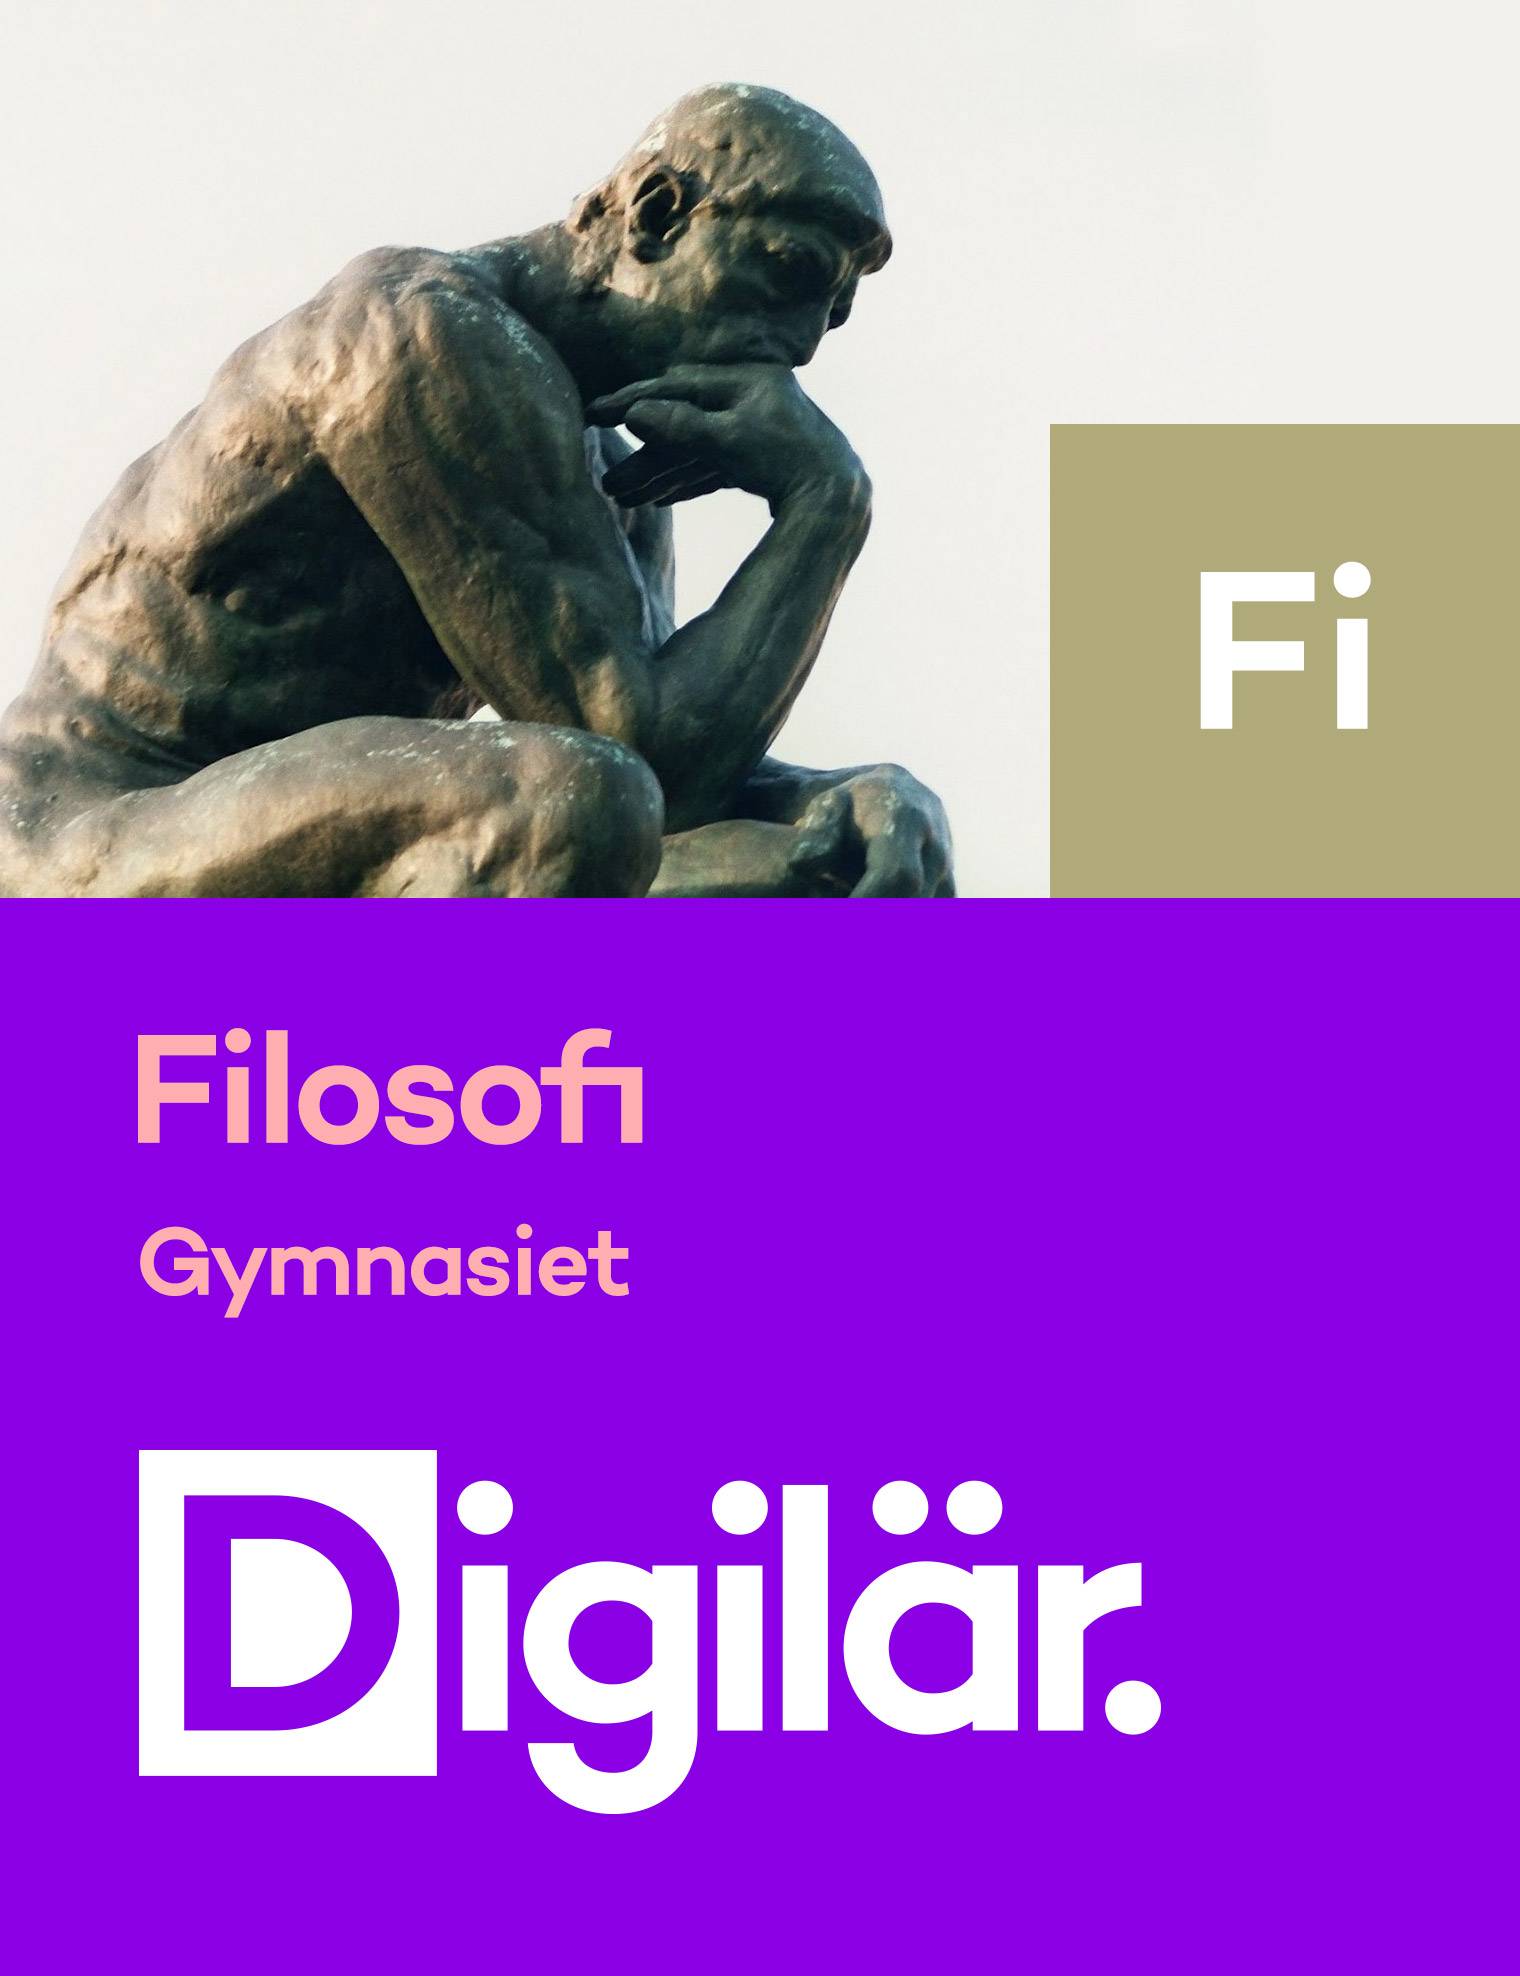 Filosofi Digital